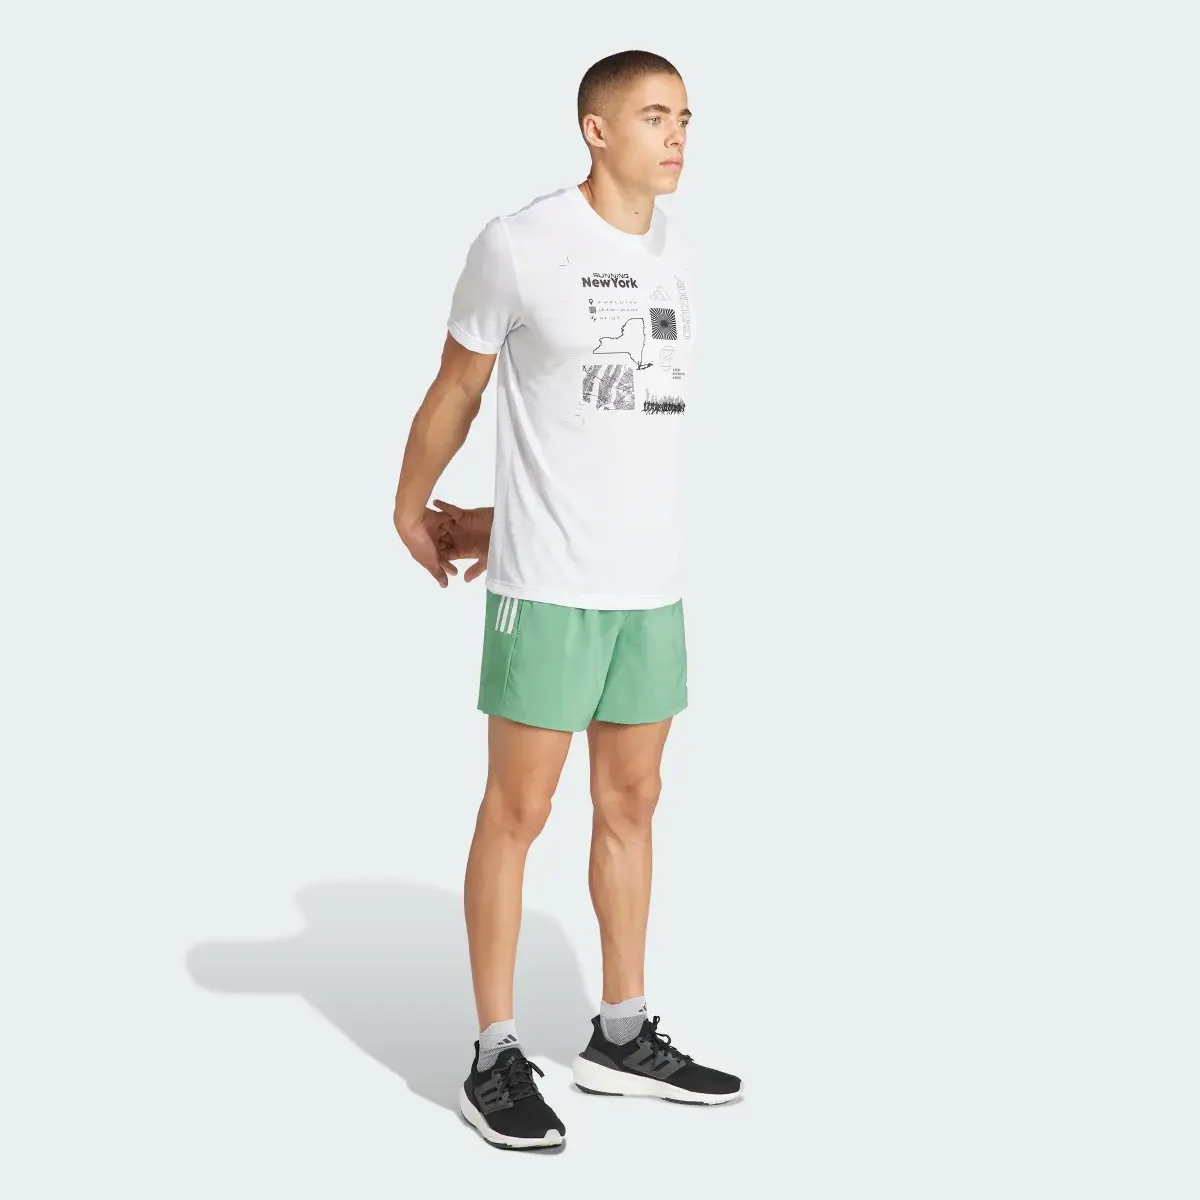 Adidas Own The Run Shorts. 3